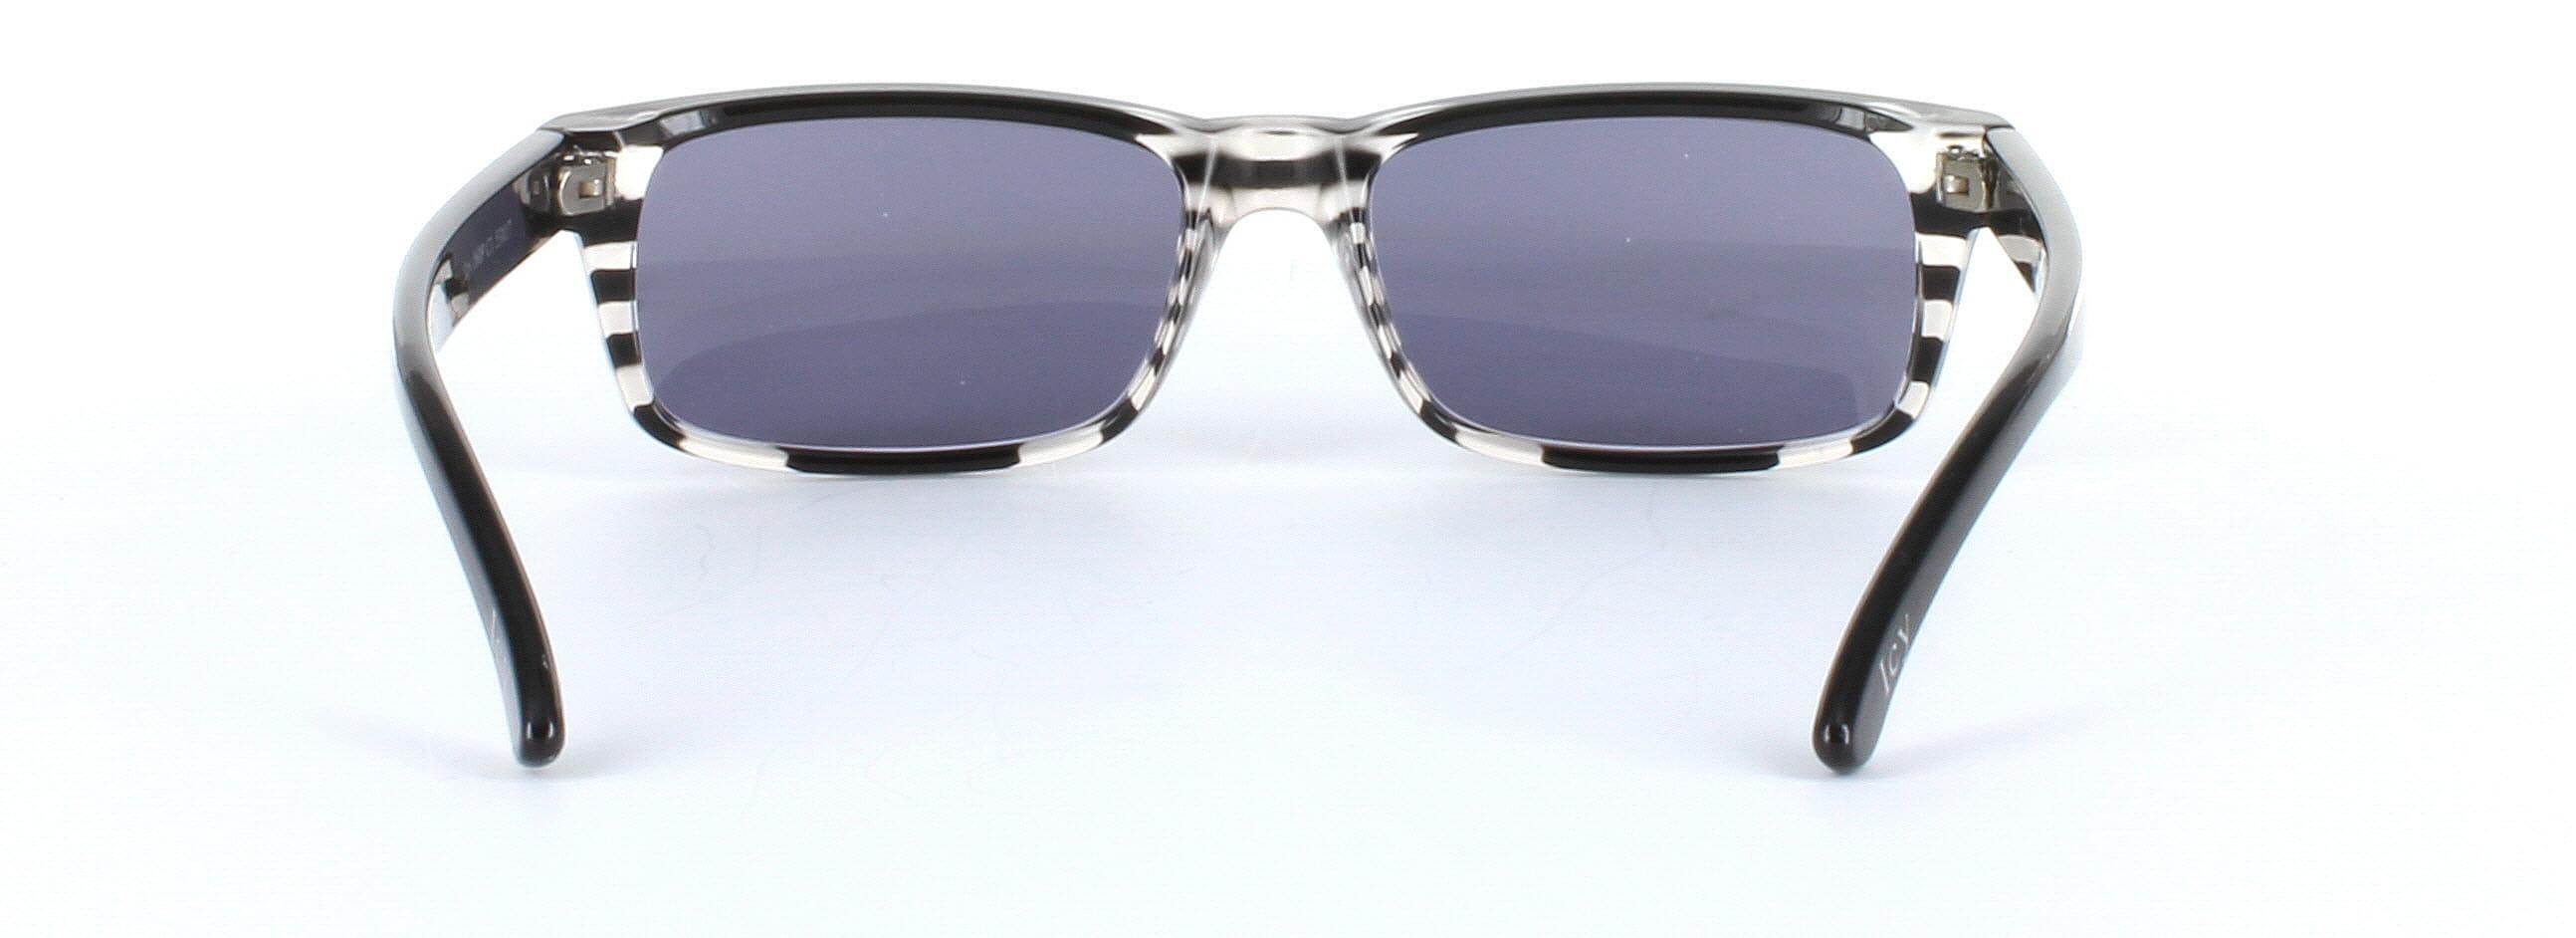 ICY 160 Grey Full Rim Rectangular Plastic Prescription Sunglasses - Image View 3